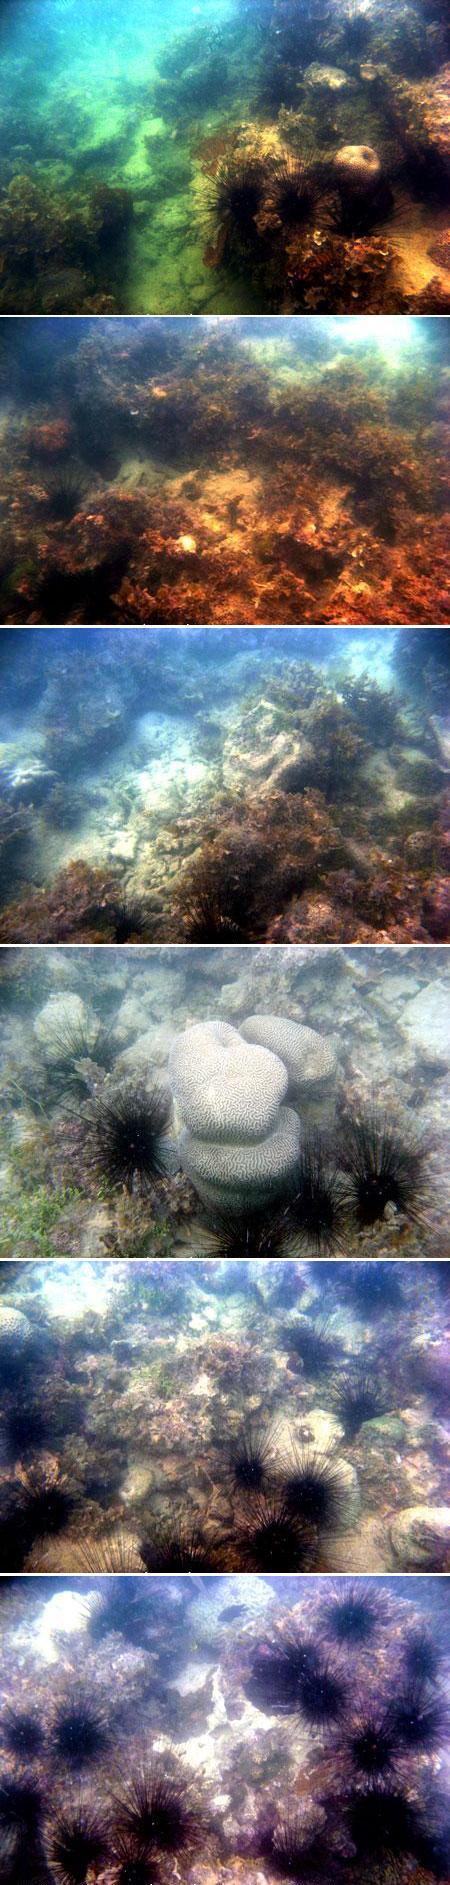 Bulu Babi (Diadema sp.) pada terumbu karang (coral reef) yang rusak, tertutup sedimen, di Pulau Panjang (Maret 2009)